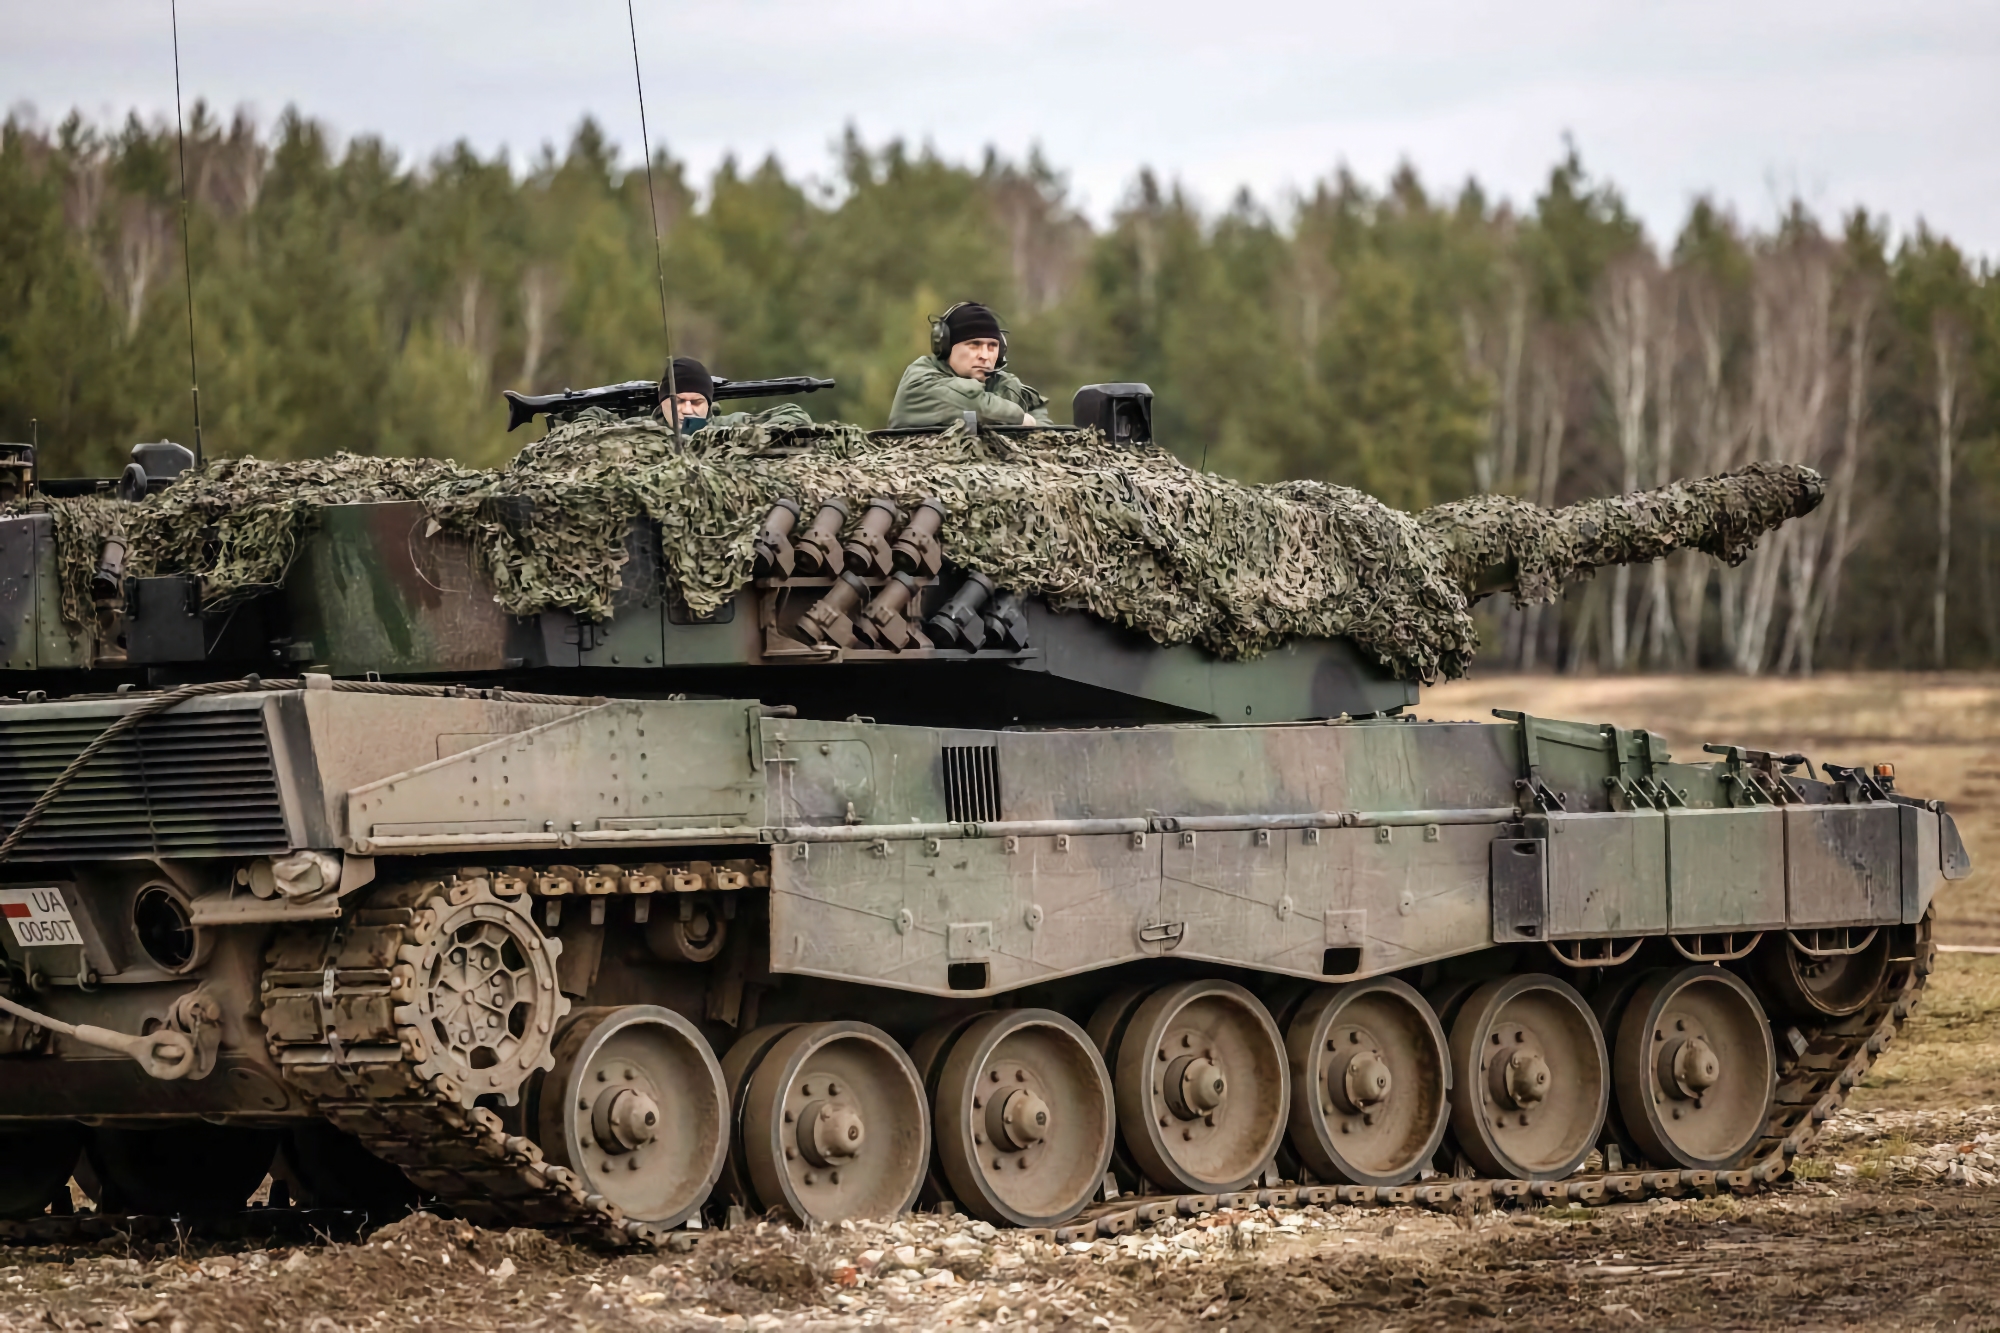 20 M113 APCs, 4 Leopard 2 Panzer und ein Role 2 plus Feldlazarett: Spanien schickt Ukraine neues Militärhilfepaket